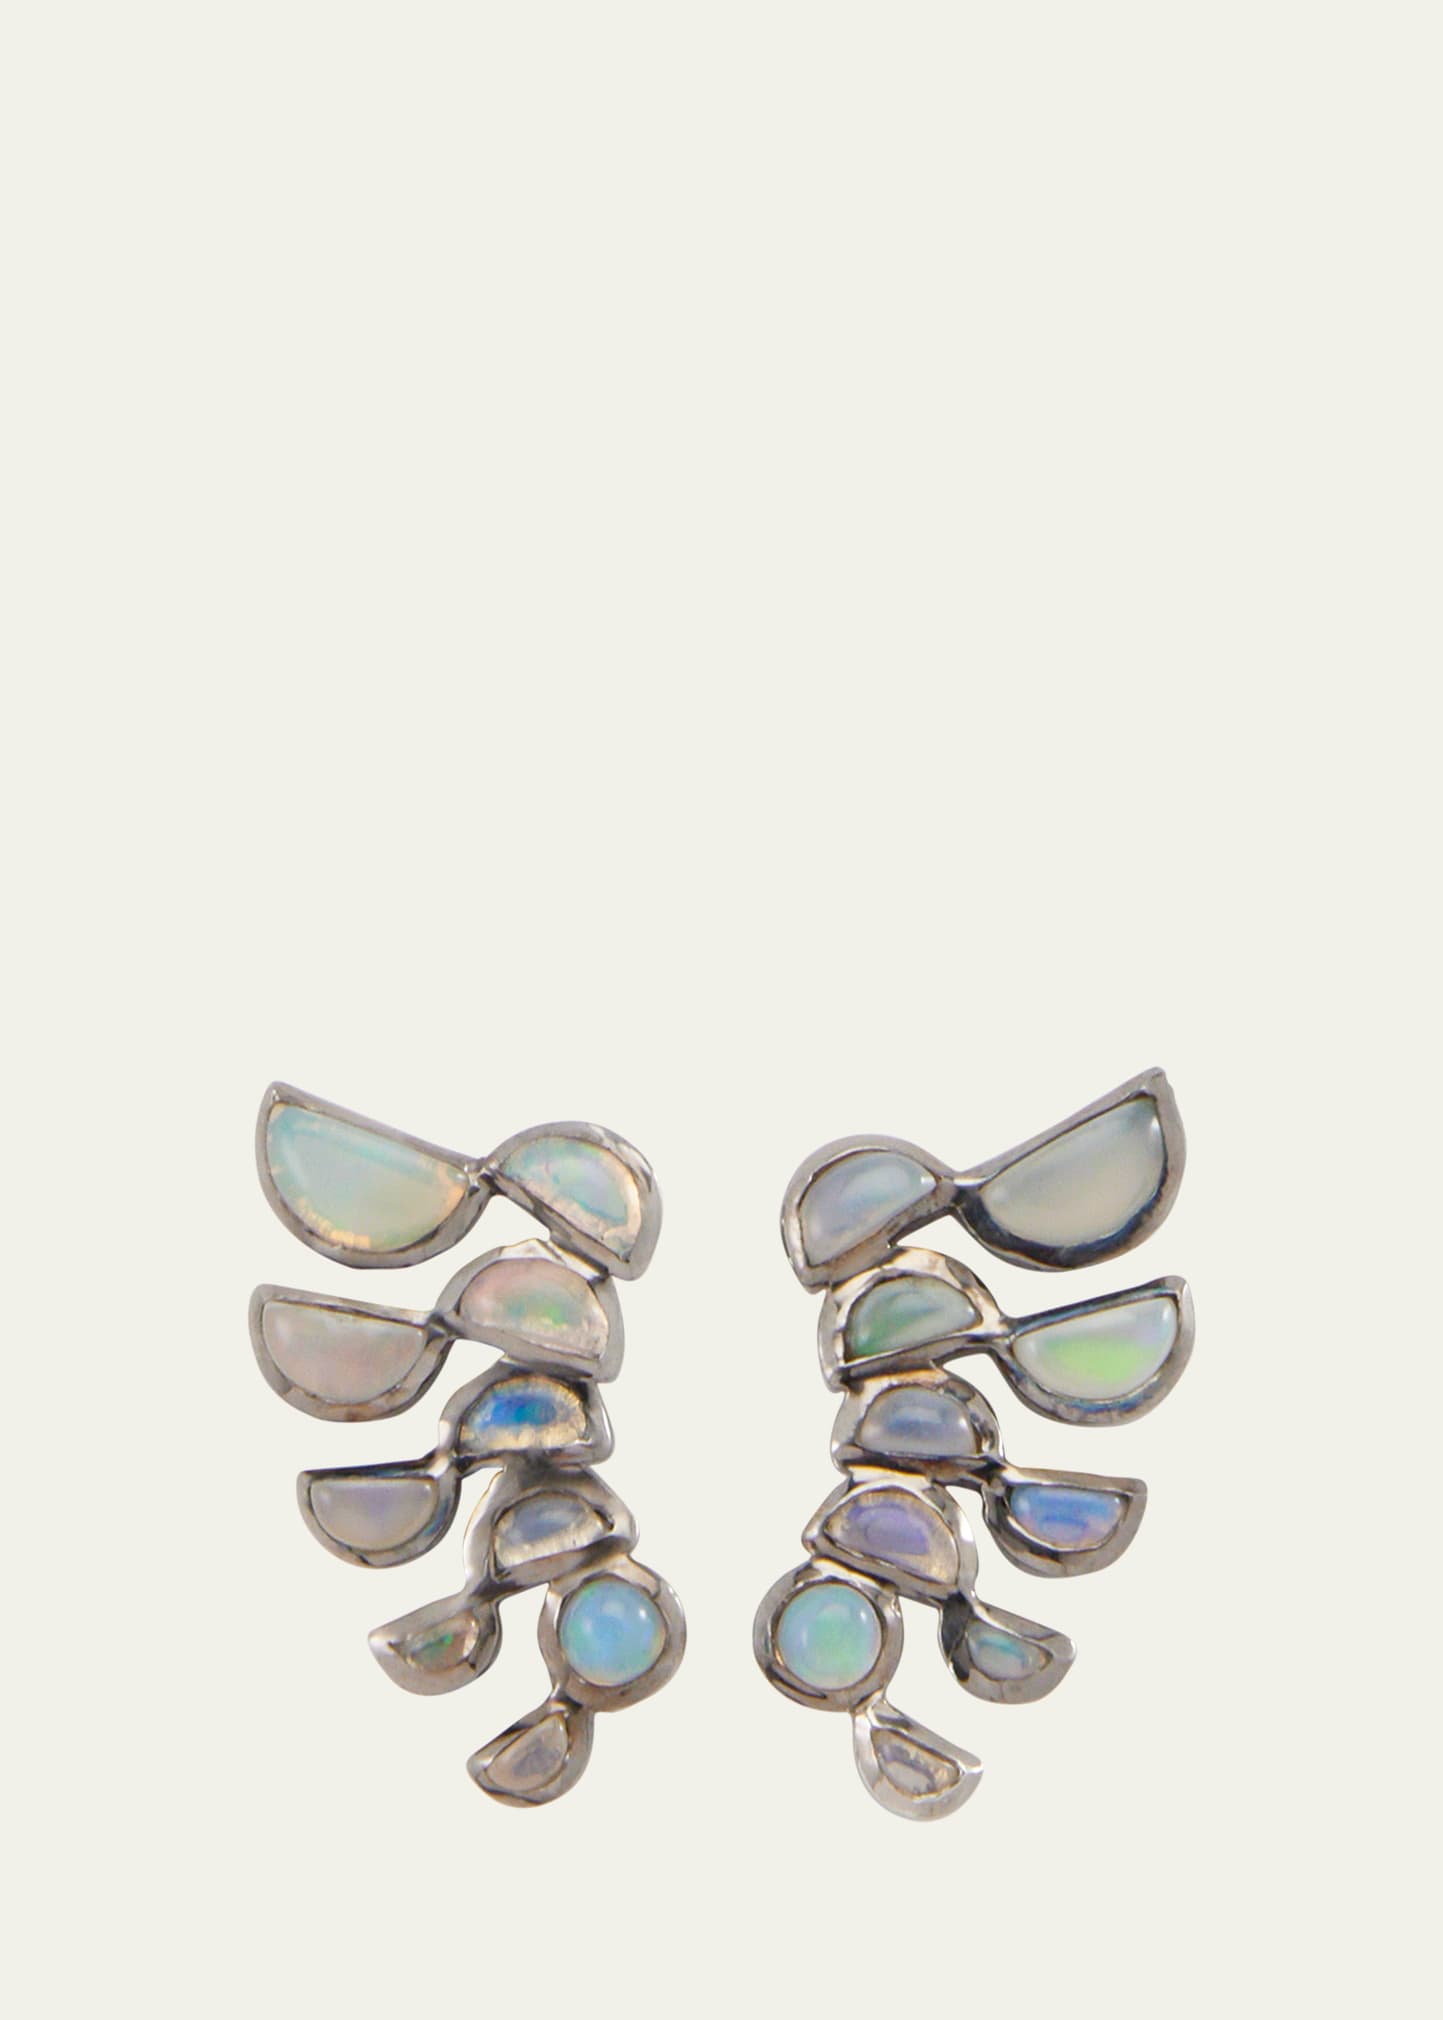 Lobster Earrings with Ethiopian Opal